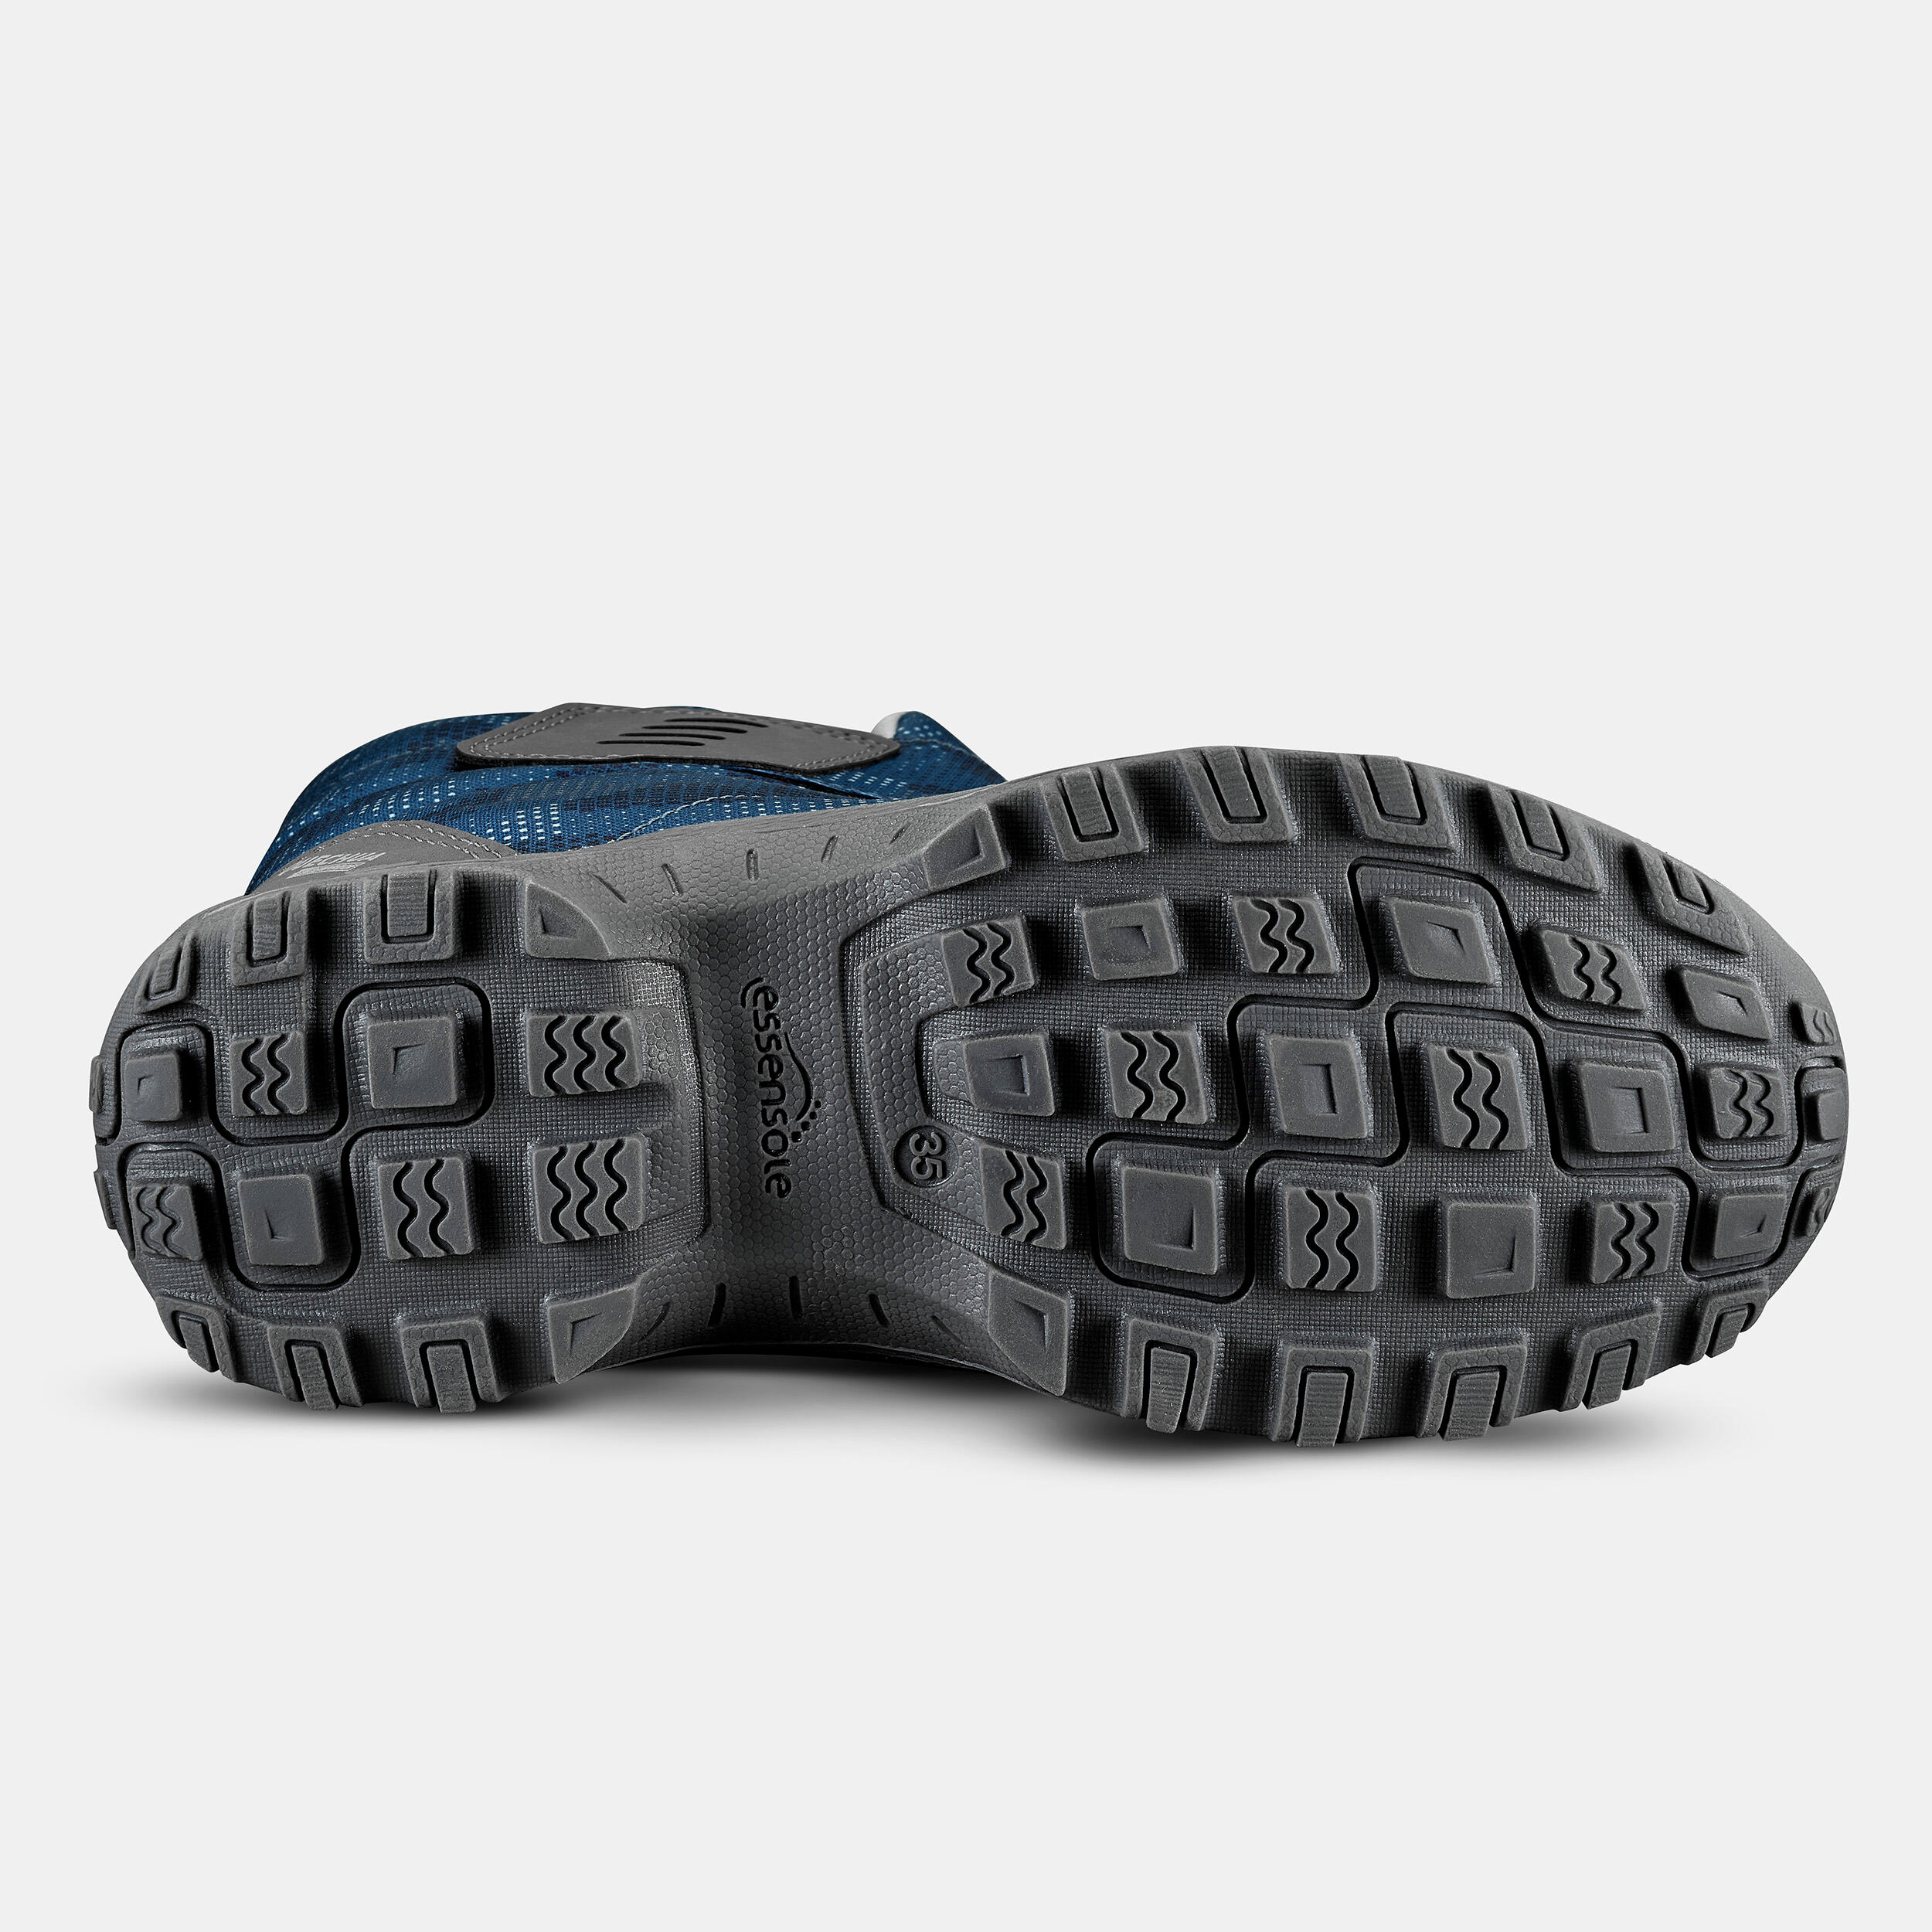 Kids’ Warm Waterproof Snow Hiking Boots SH100 X-Warm Size 7 - 5.5 3/7